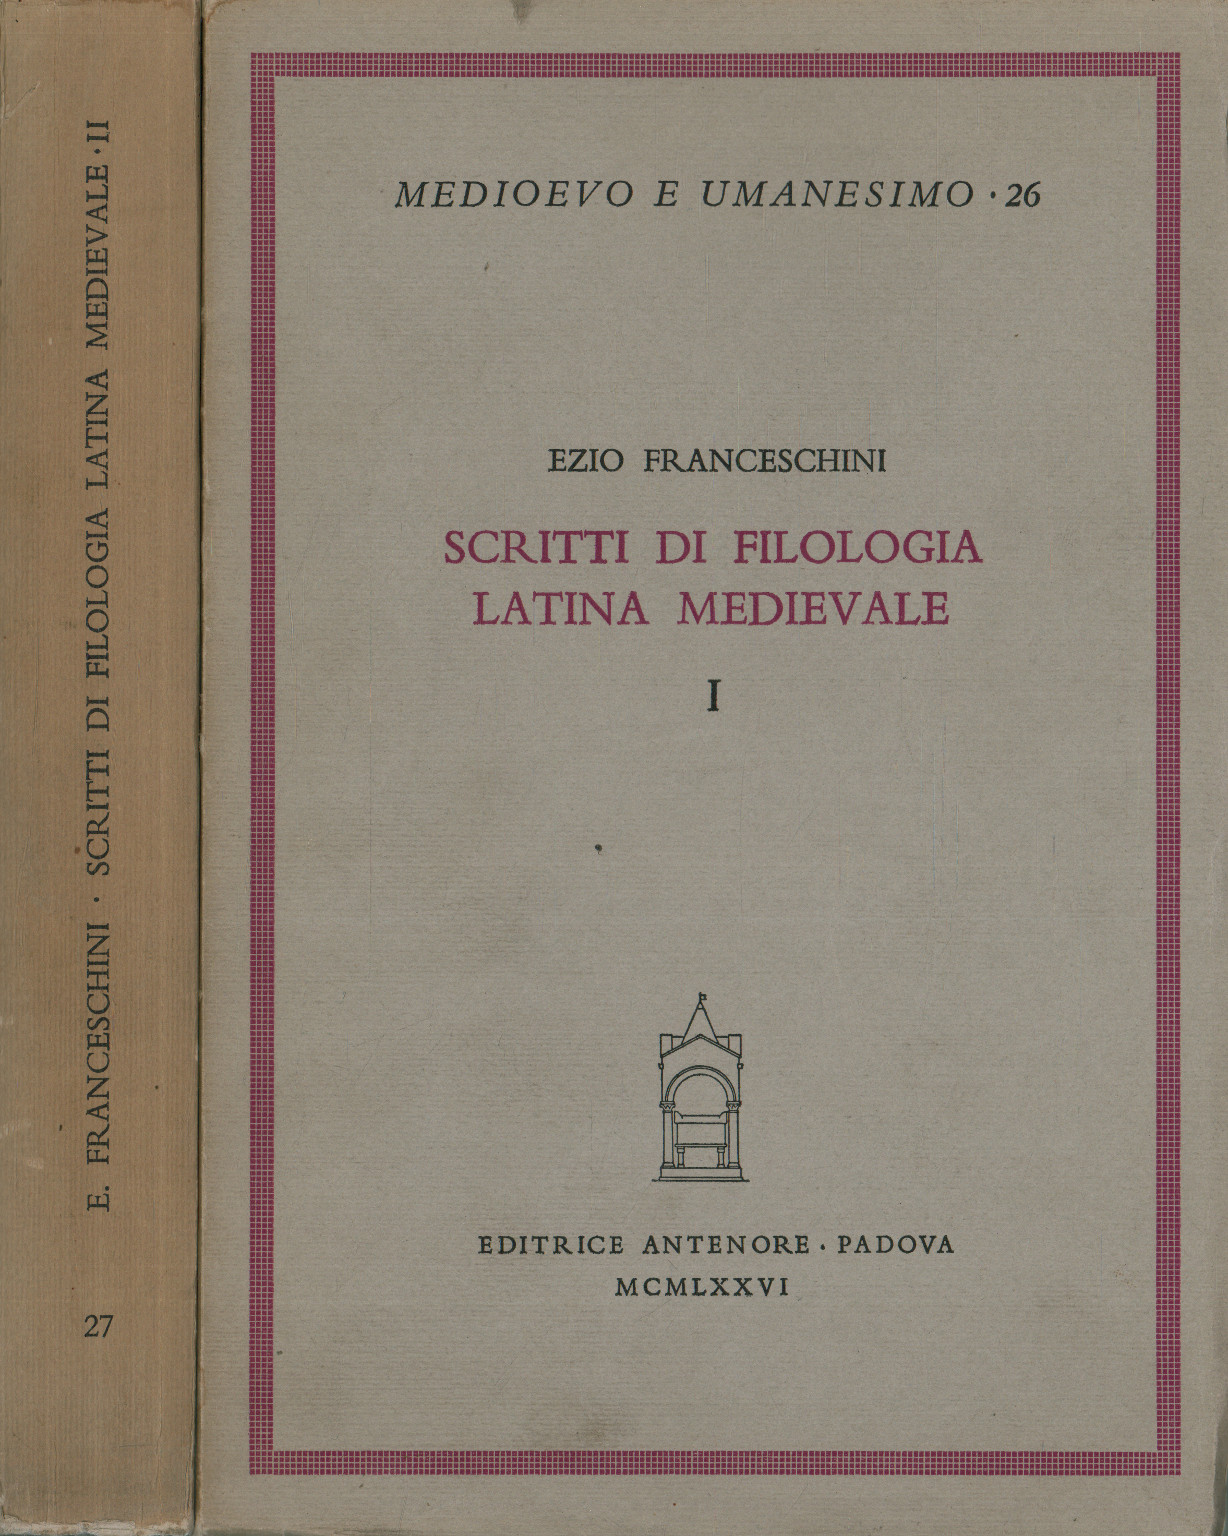 Schriften der mittelalterlichen lateinischen Philosophie (2 Bände), Ezio Franceschini, Schriften der mittelalterlichen lateinischen Philologie (2